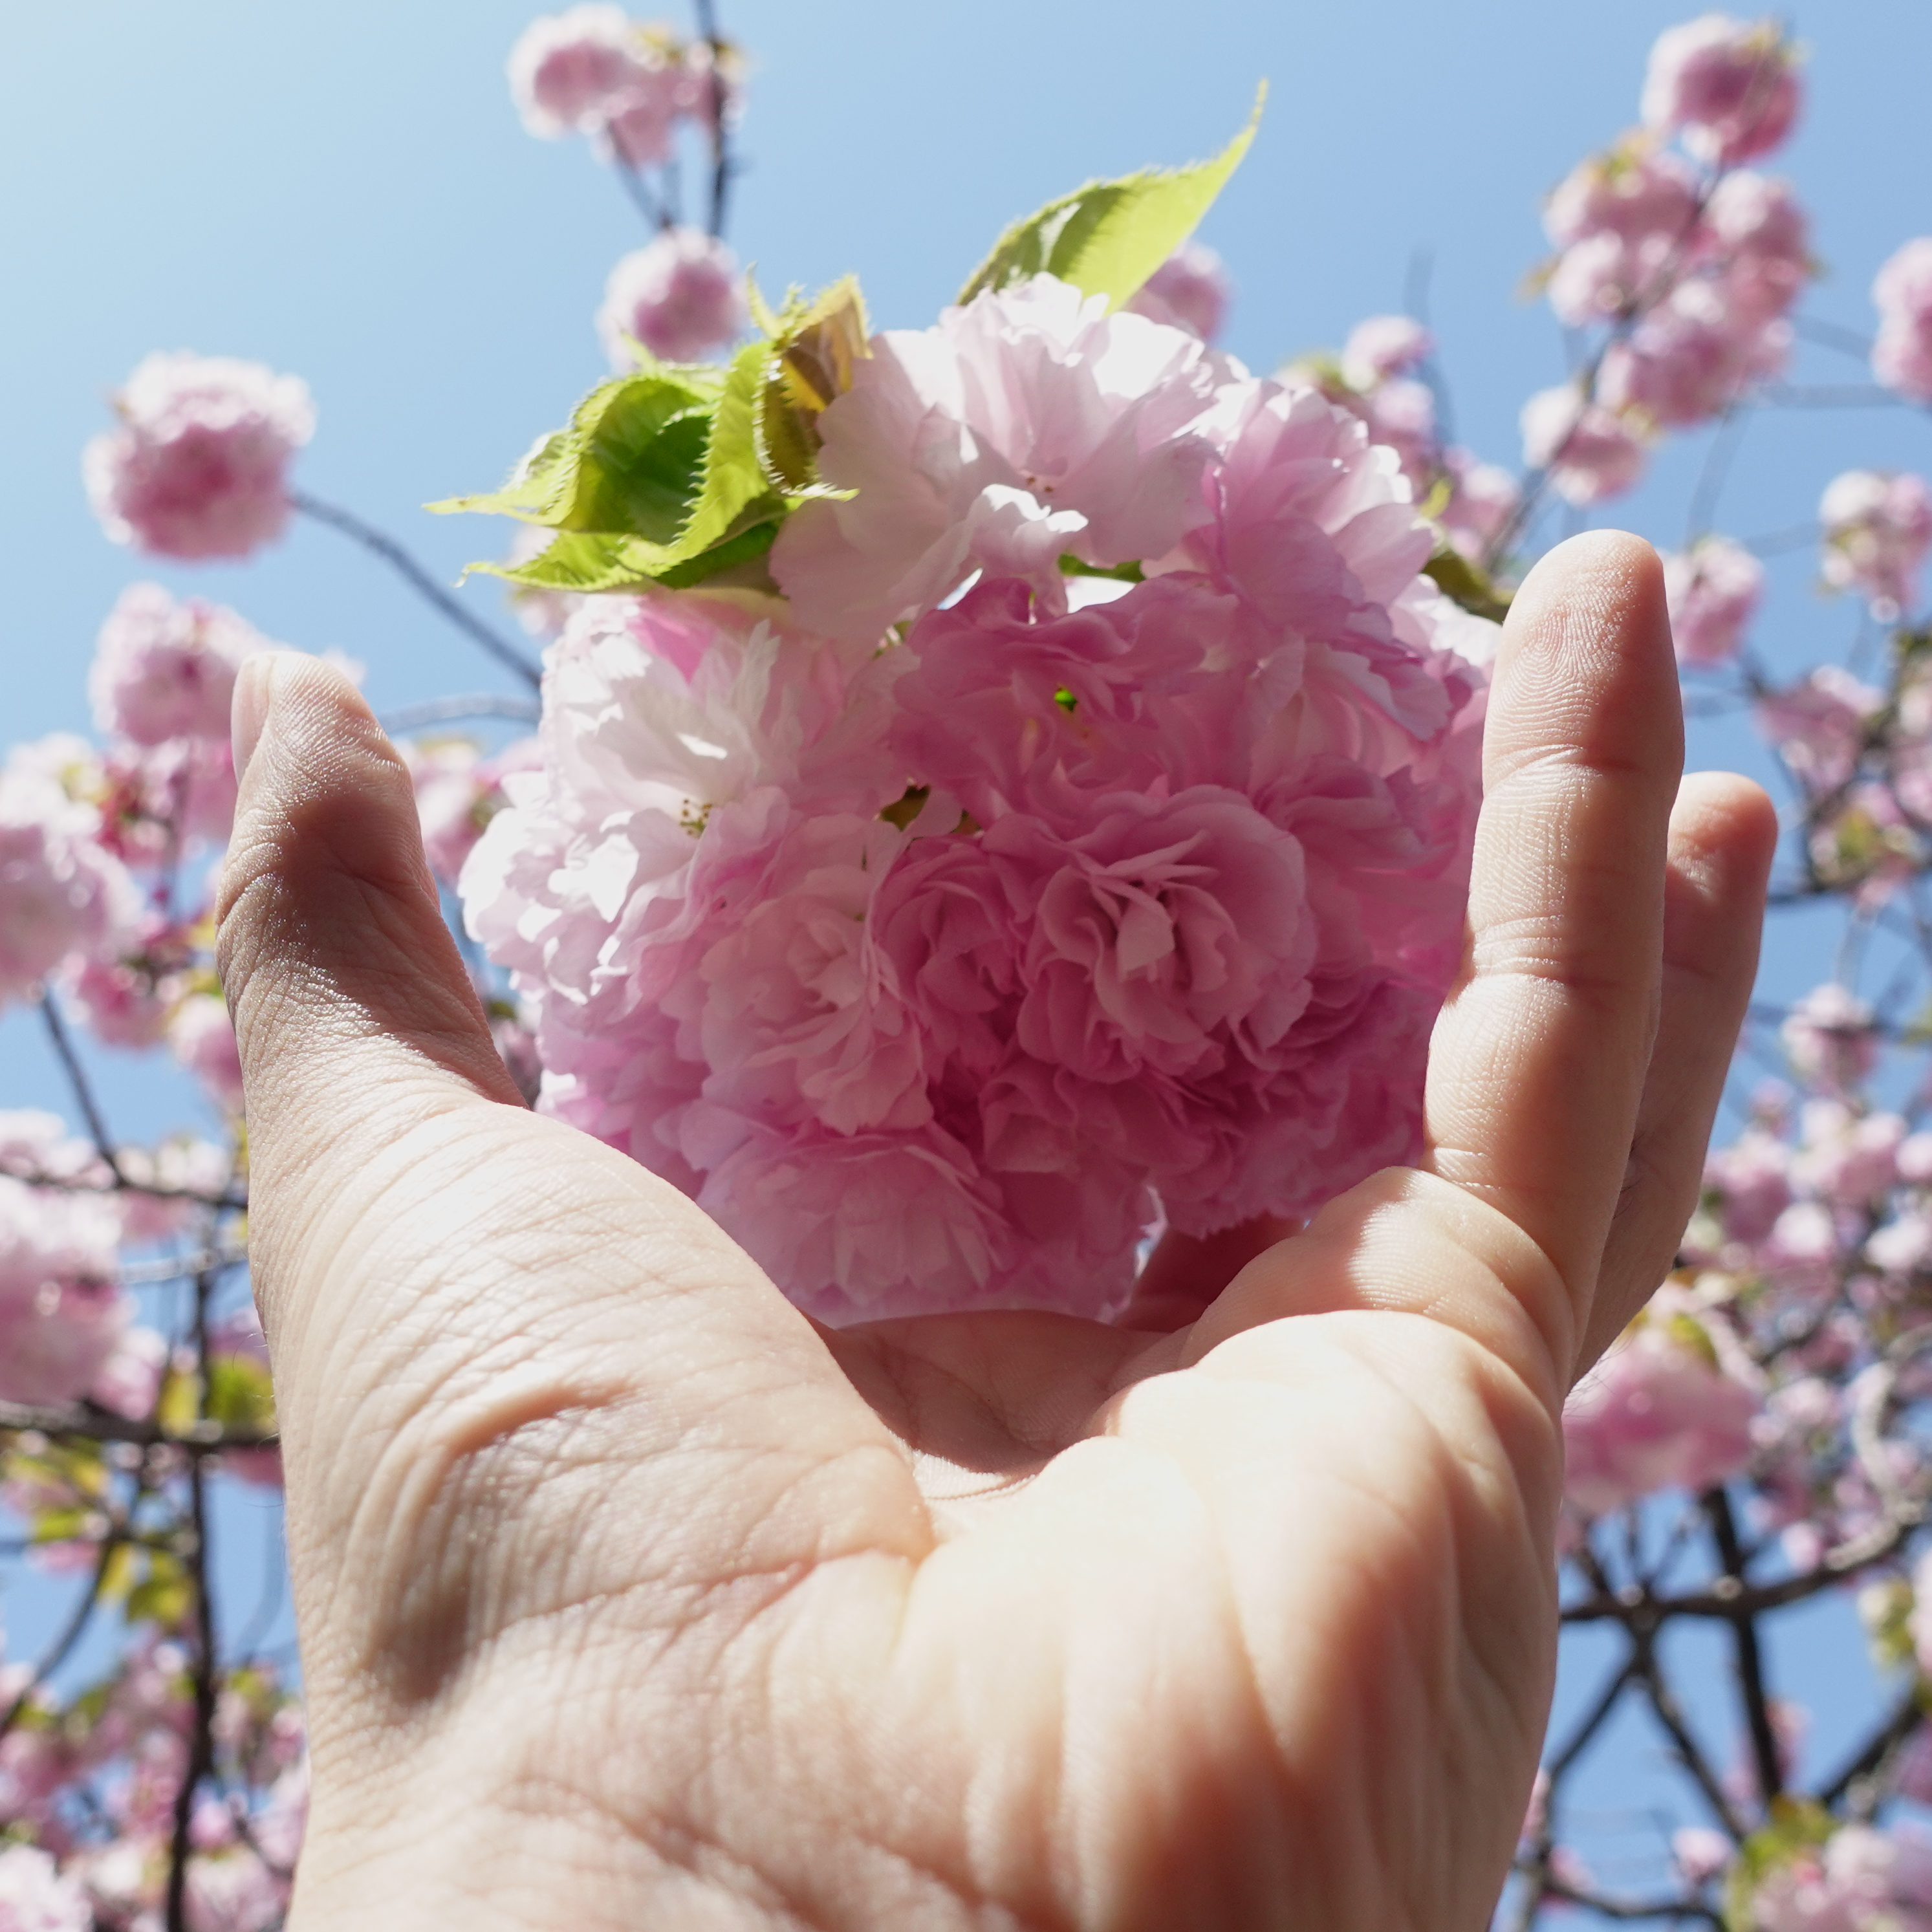 広島市内で桜を見るなら一般公開 花のまわりみち 造幣局広島支局の桜 広島県広島市 海燕 カイエンの釣り旅